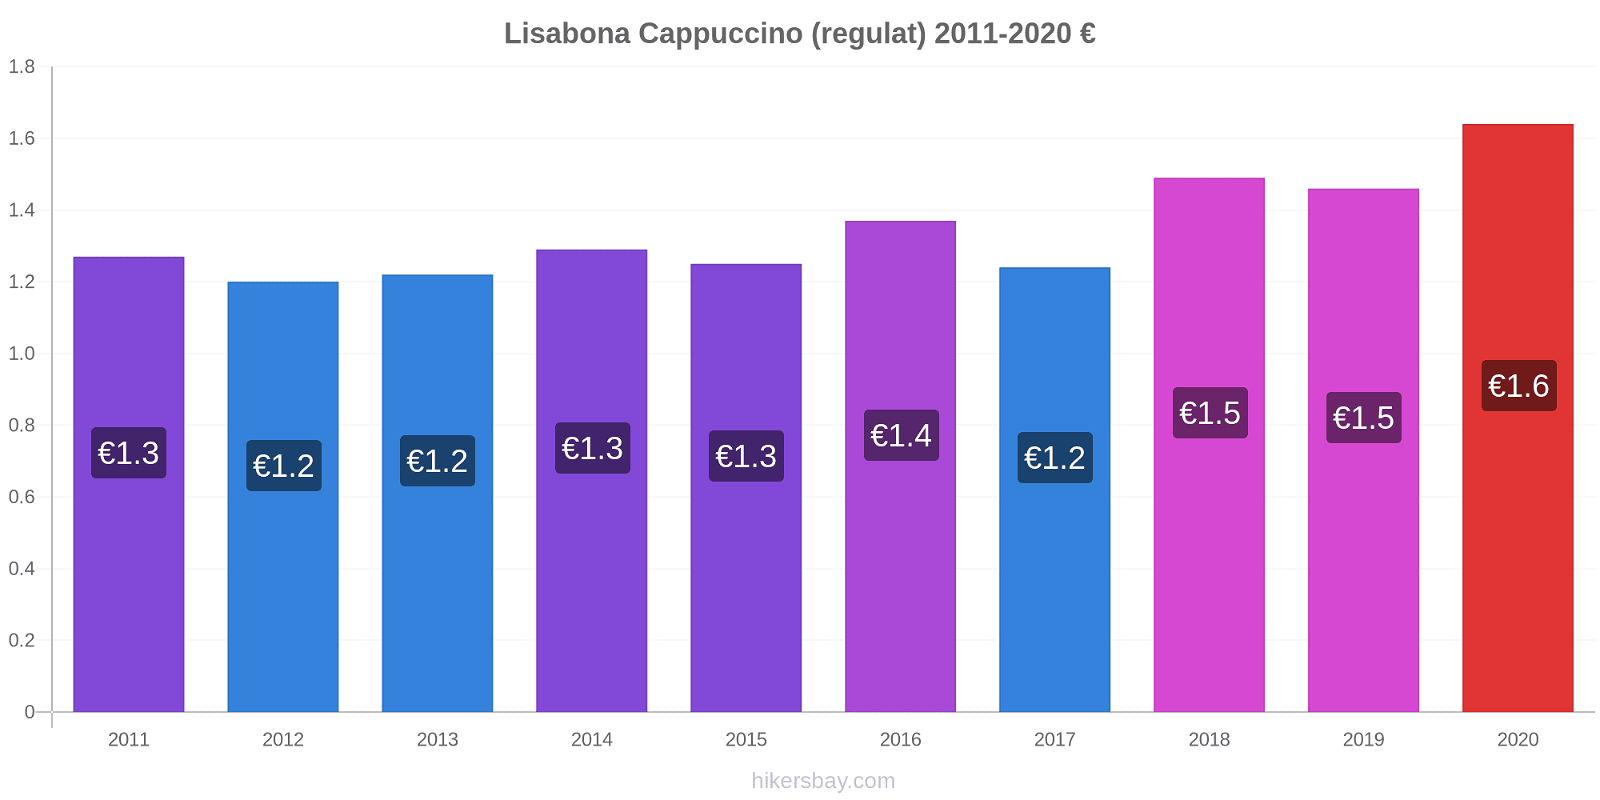 Lisabona modificări de preț Cappuccino (regulat) hikersbay.com